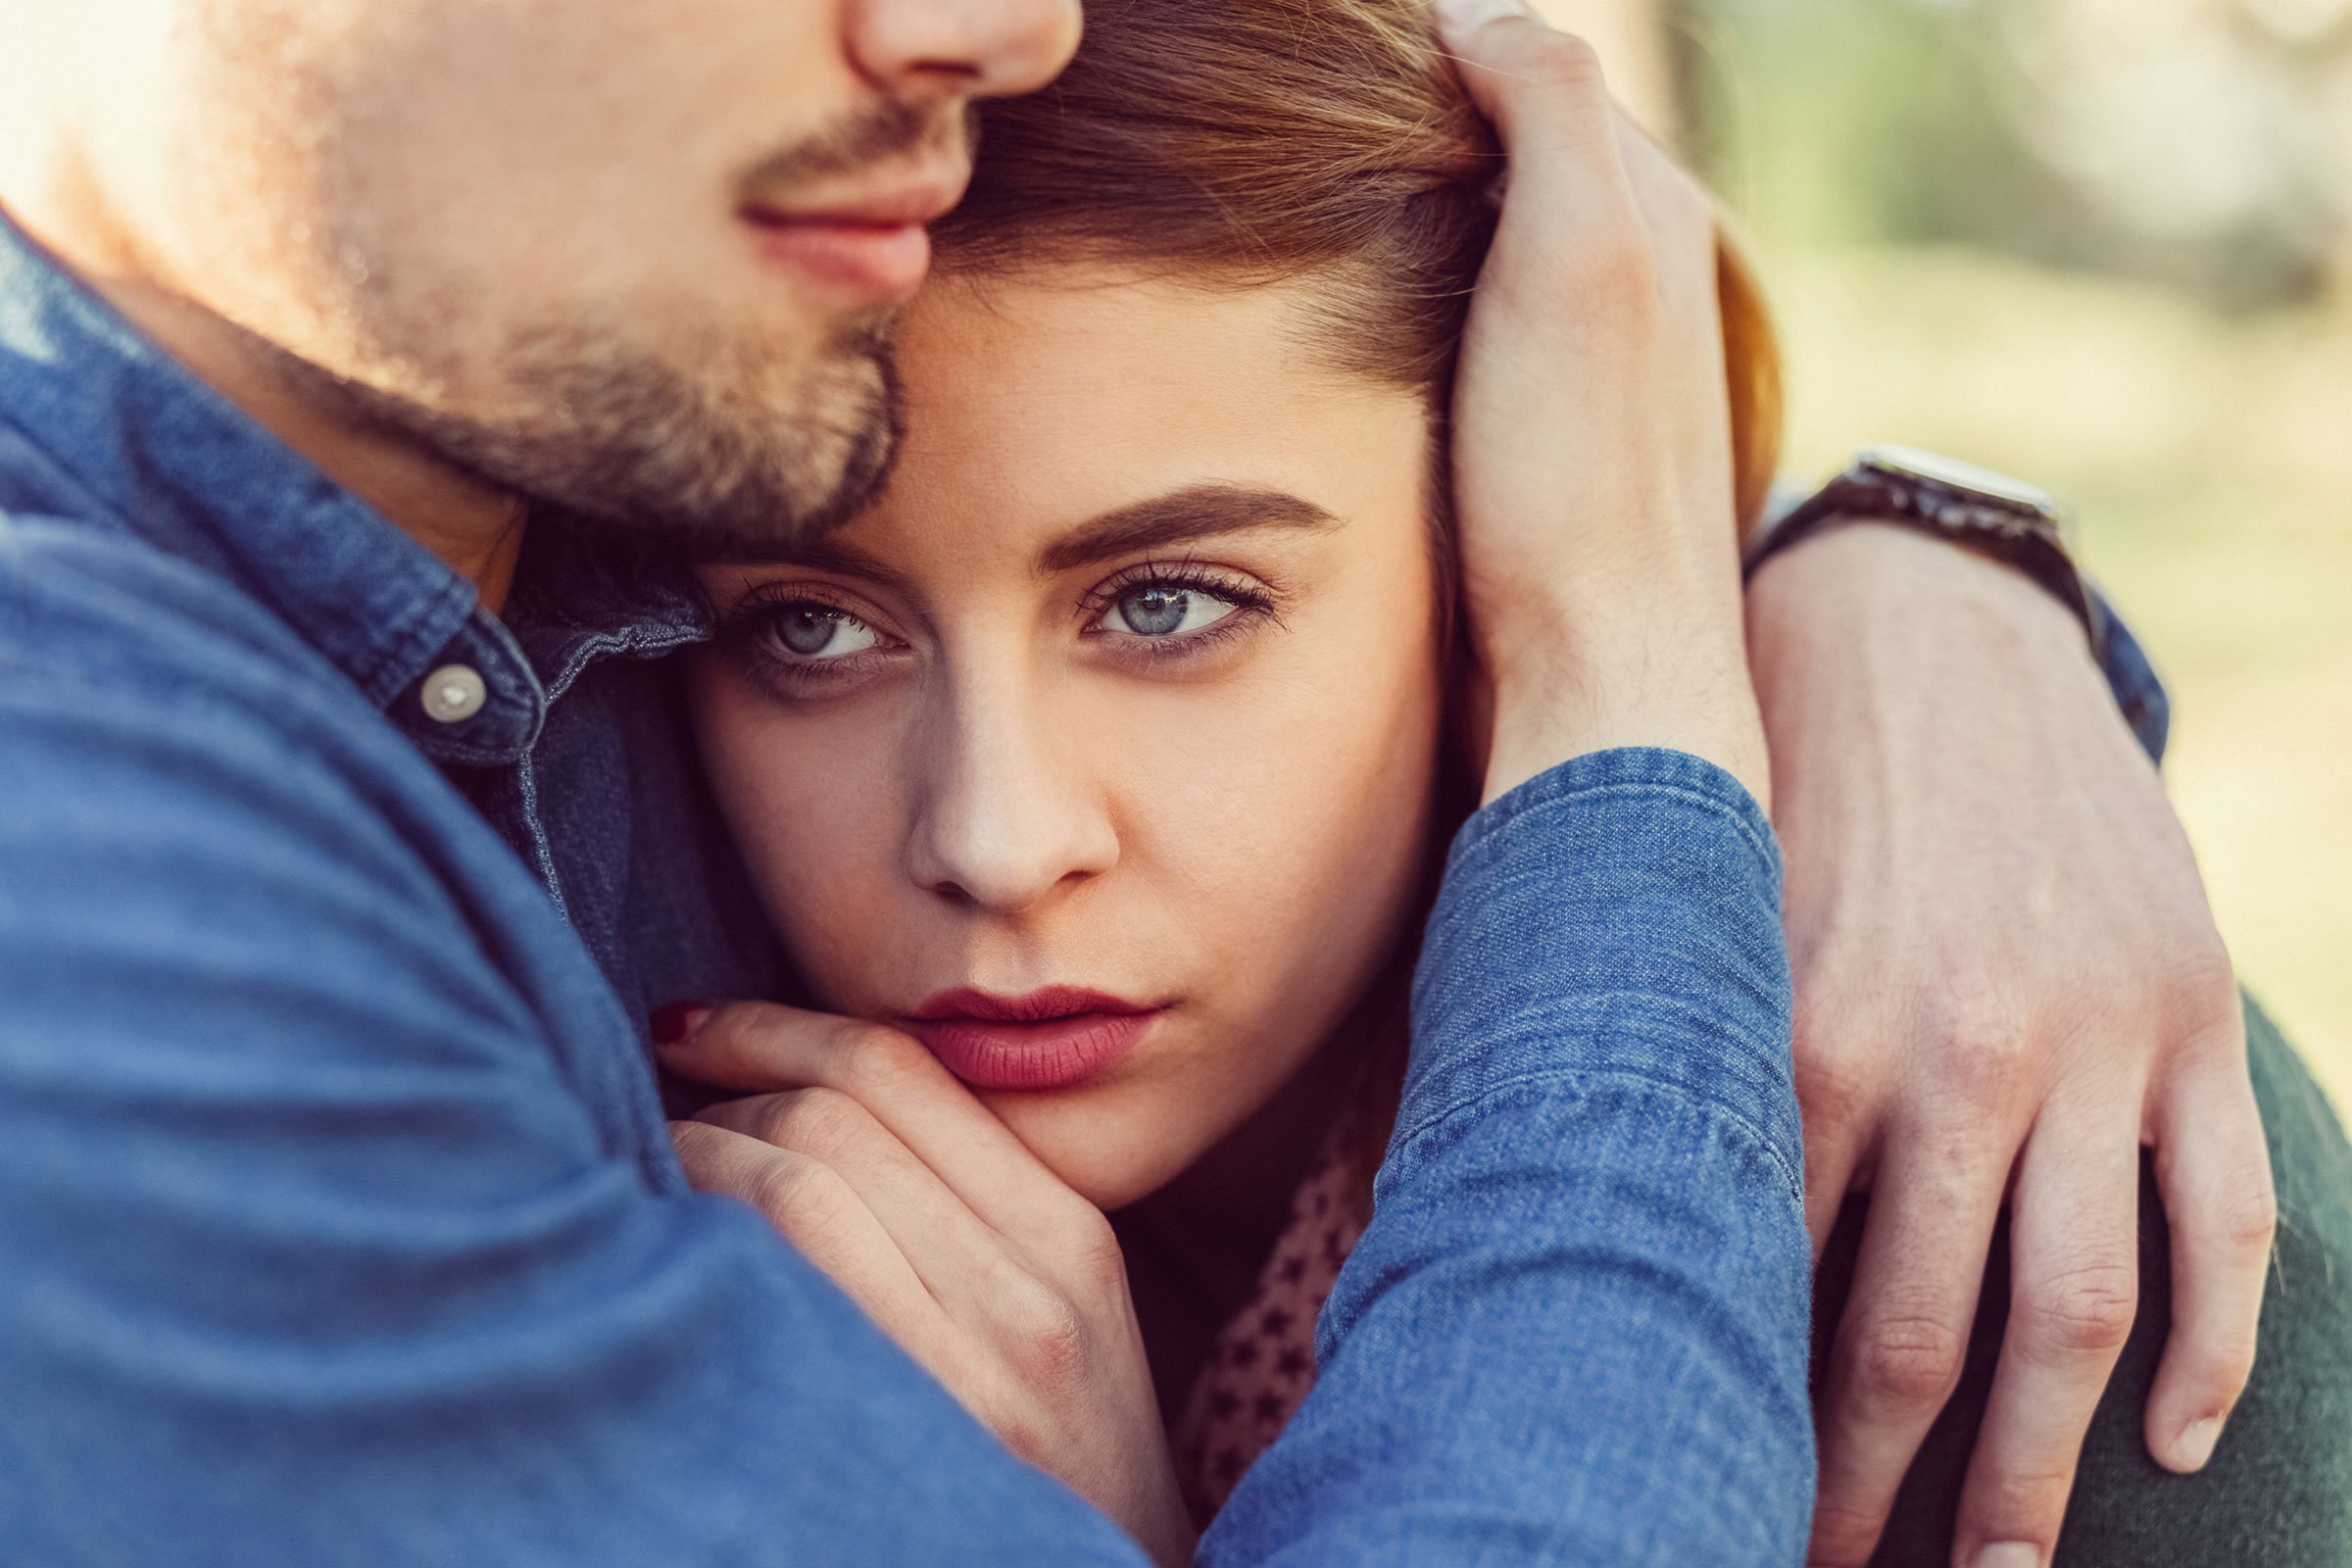 5 მიზეზი - რატომ აღარ უნდება ქალს საყვარელს ადამიანთან სექსი?